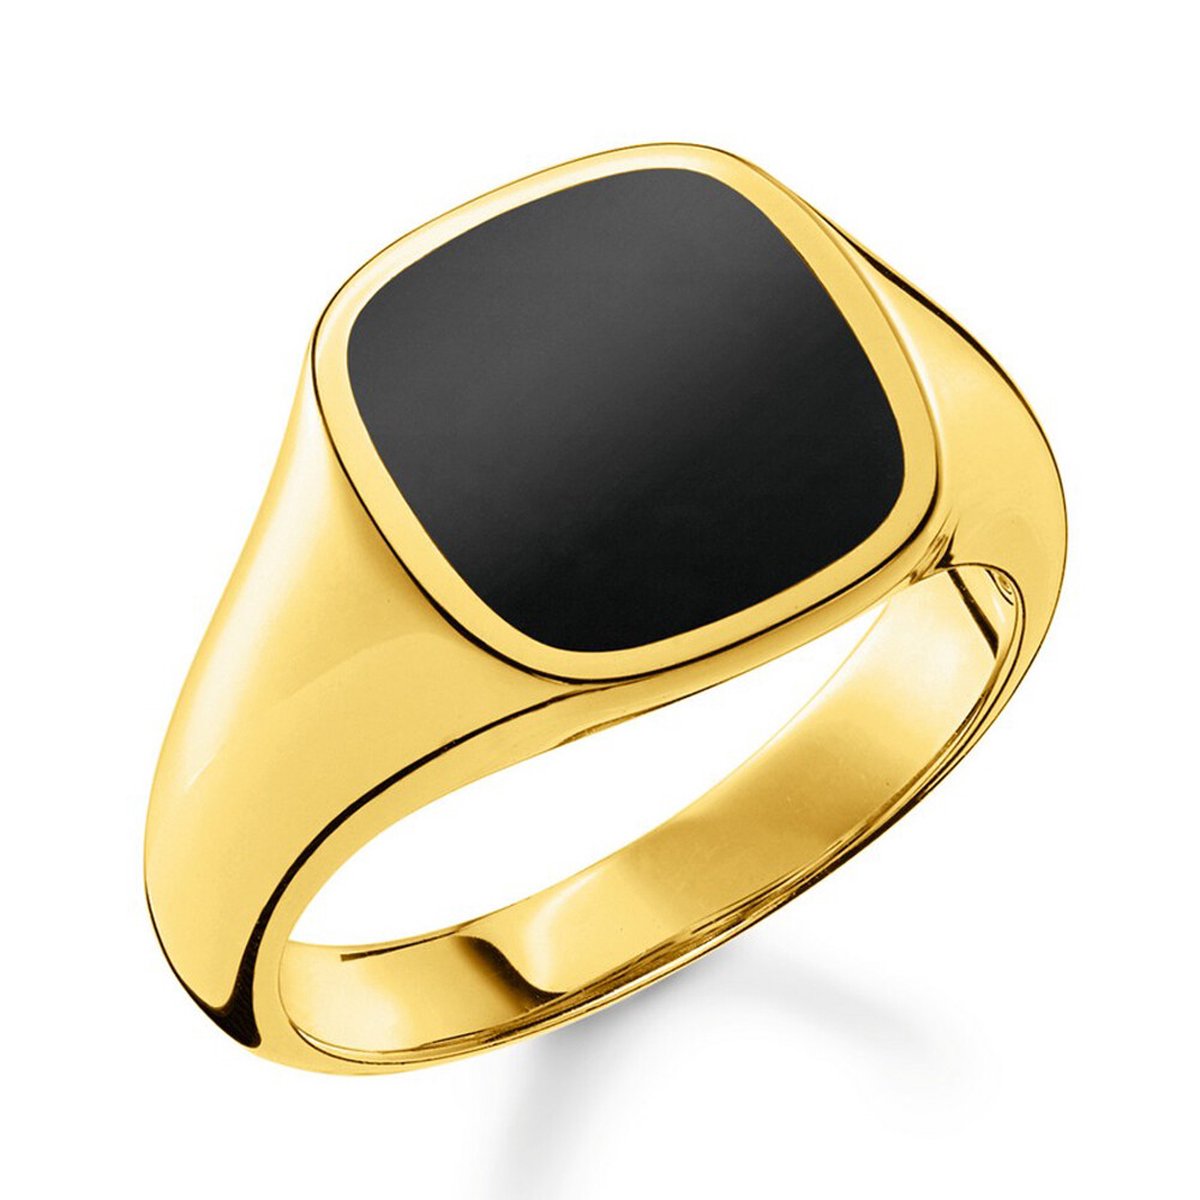 Thomas Sabo - Dames Ring - 750 / - geel goud - TR2332-177-11-60